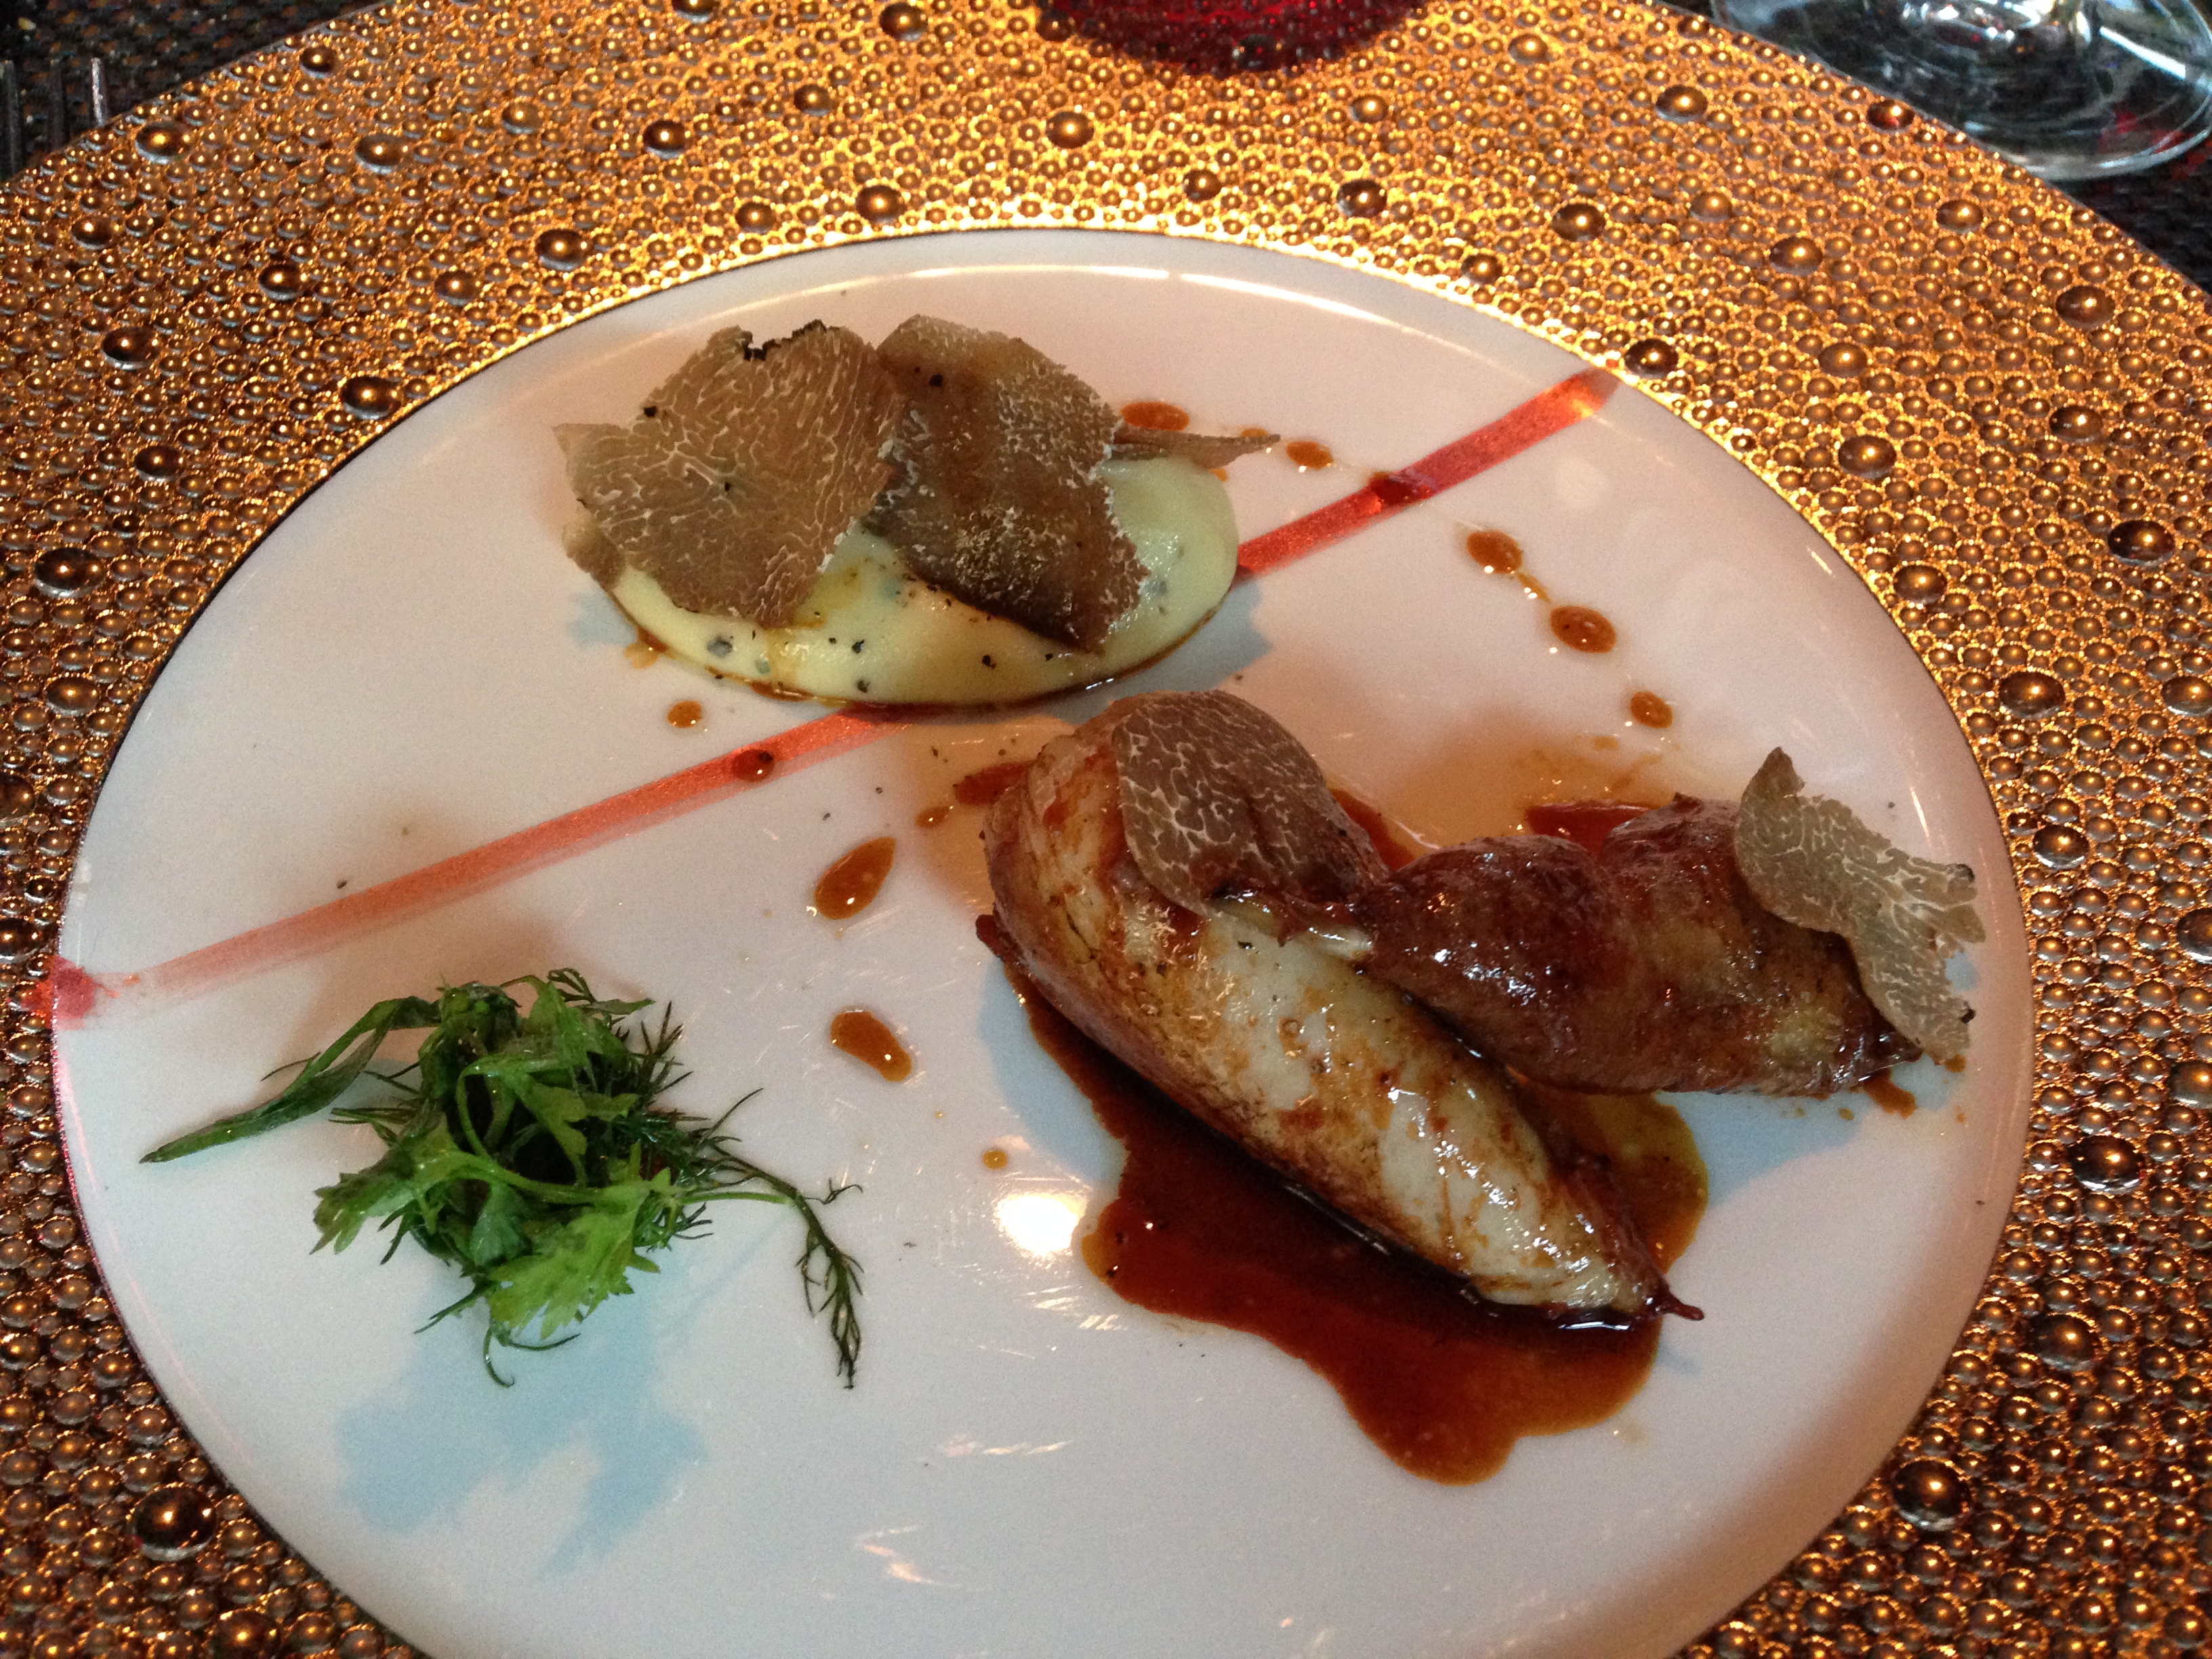 Delicious Destinations Las Vegas - fried quail breast with Foie gras